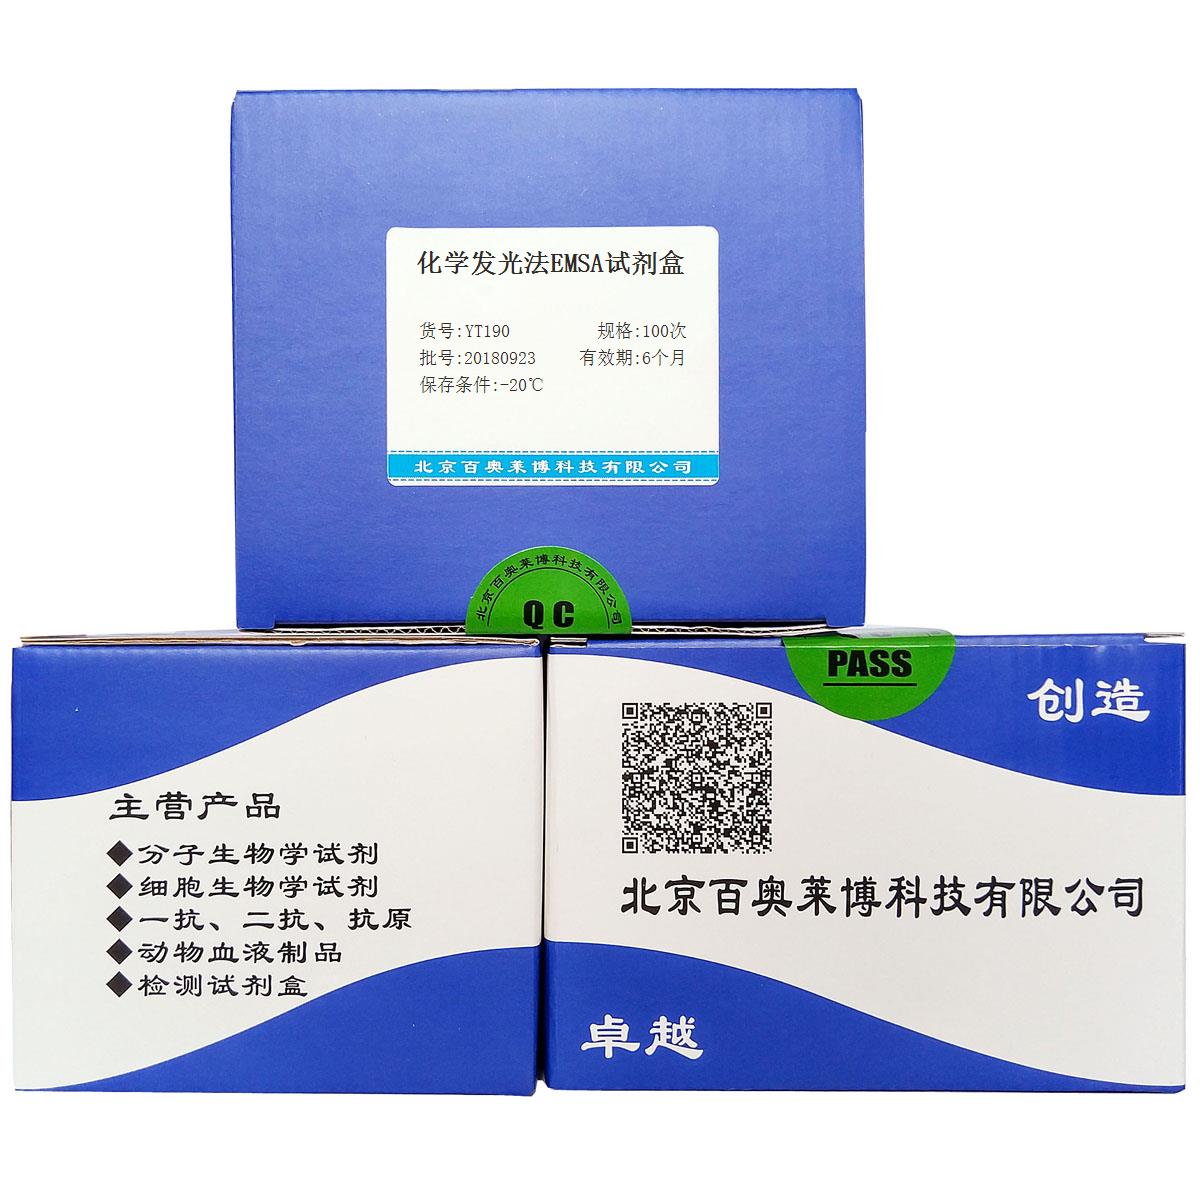 生物素标记EMSA探针检测试剂盒